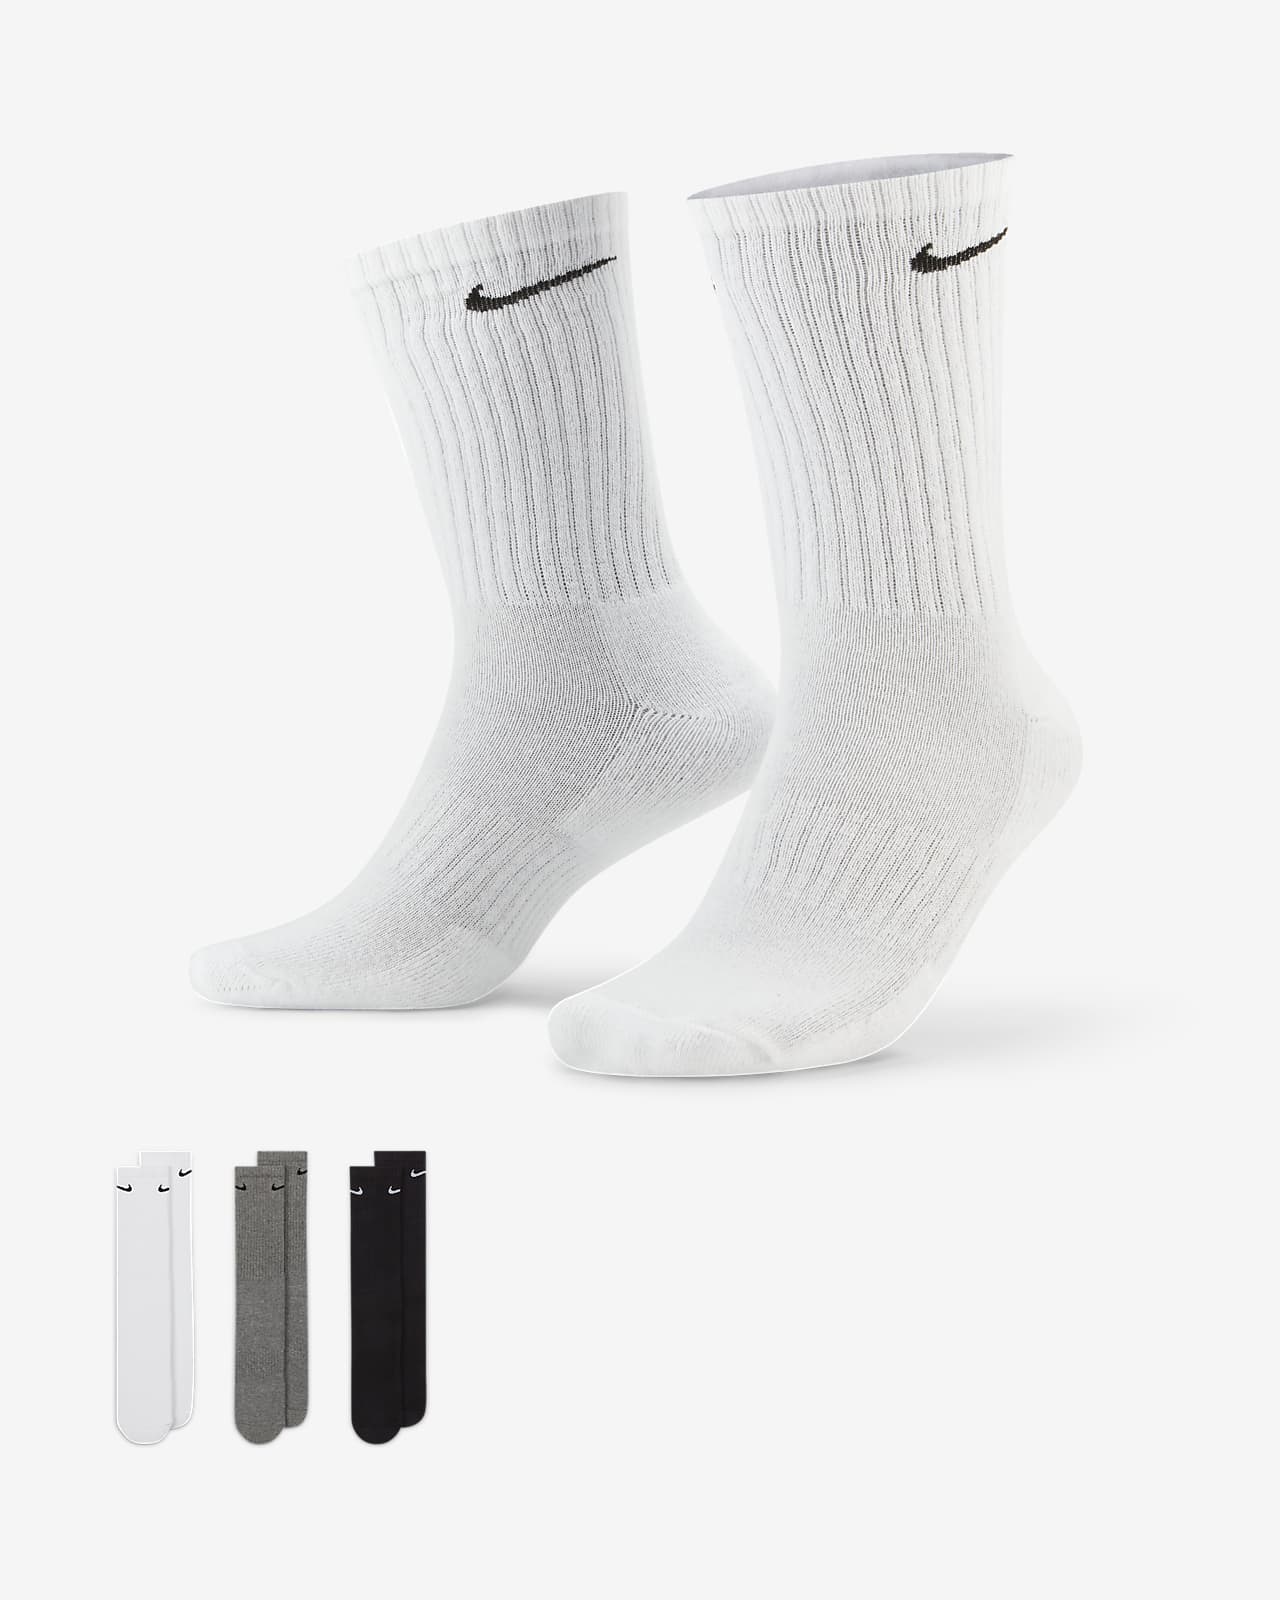 Klasyczne skarpety treningowe Nike Everyday Cushioned (3 pary)